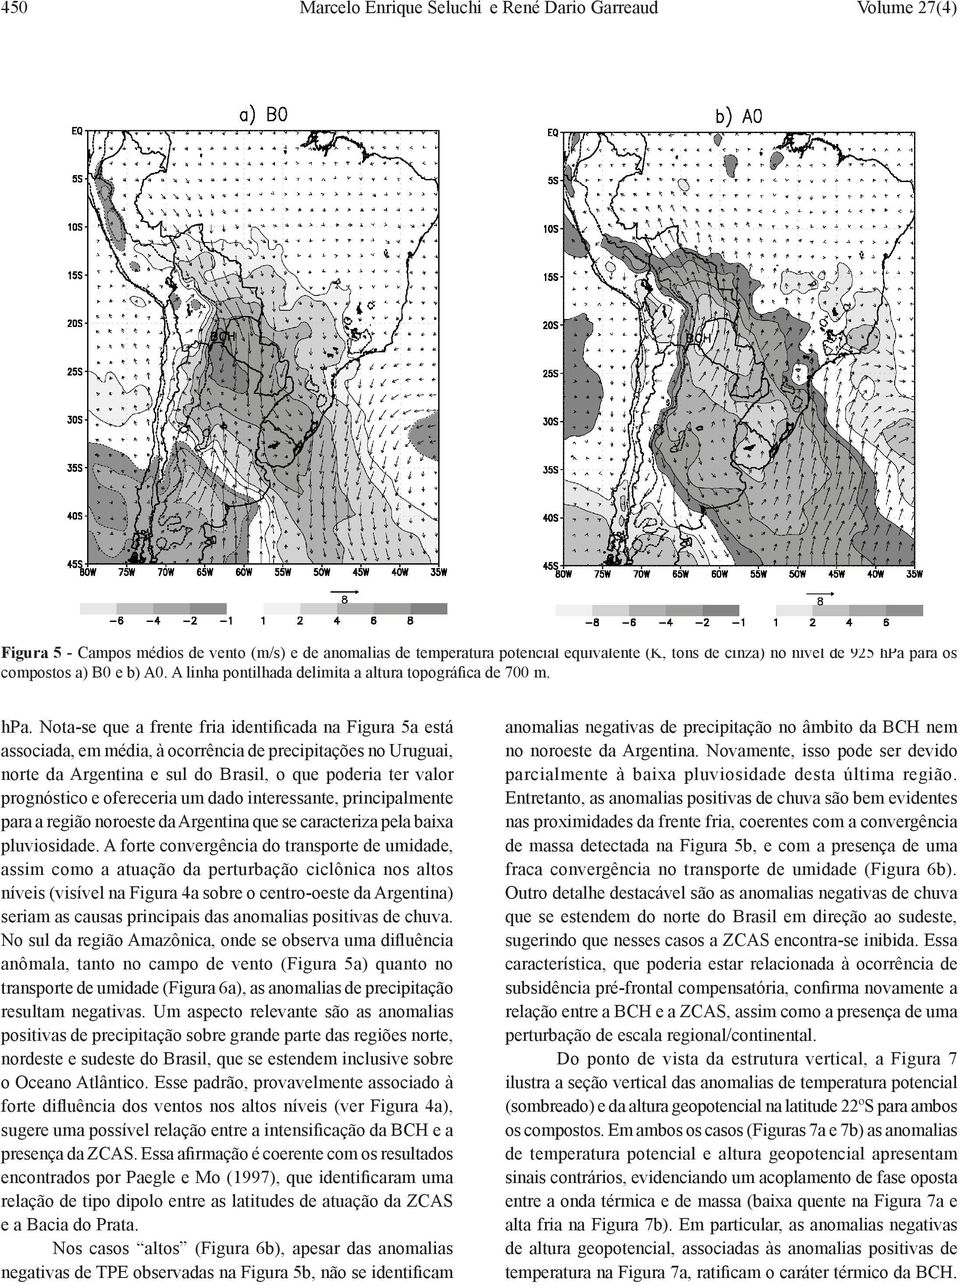 Nota-se que a frente fria identificada na Figura 5a está associada, em média, à ocorrência de precipitações no Uruguai, norte da Argentina e sul do Brasil, o que poderia ter valor prognóstico e